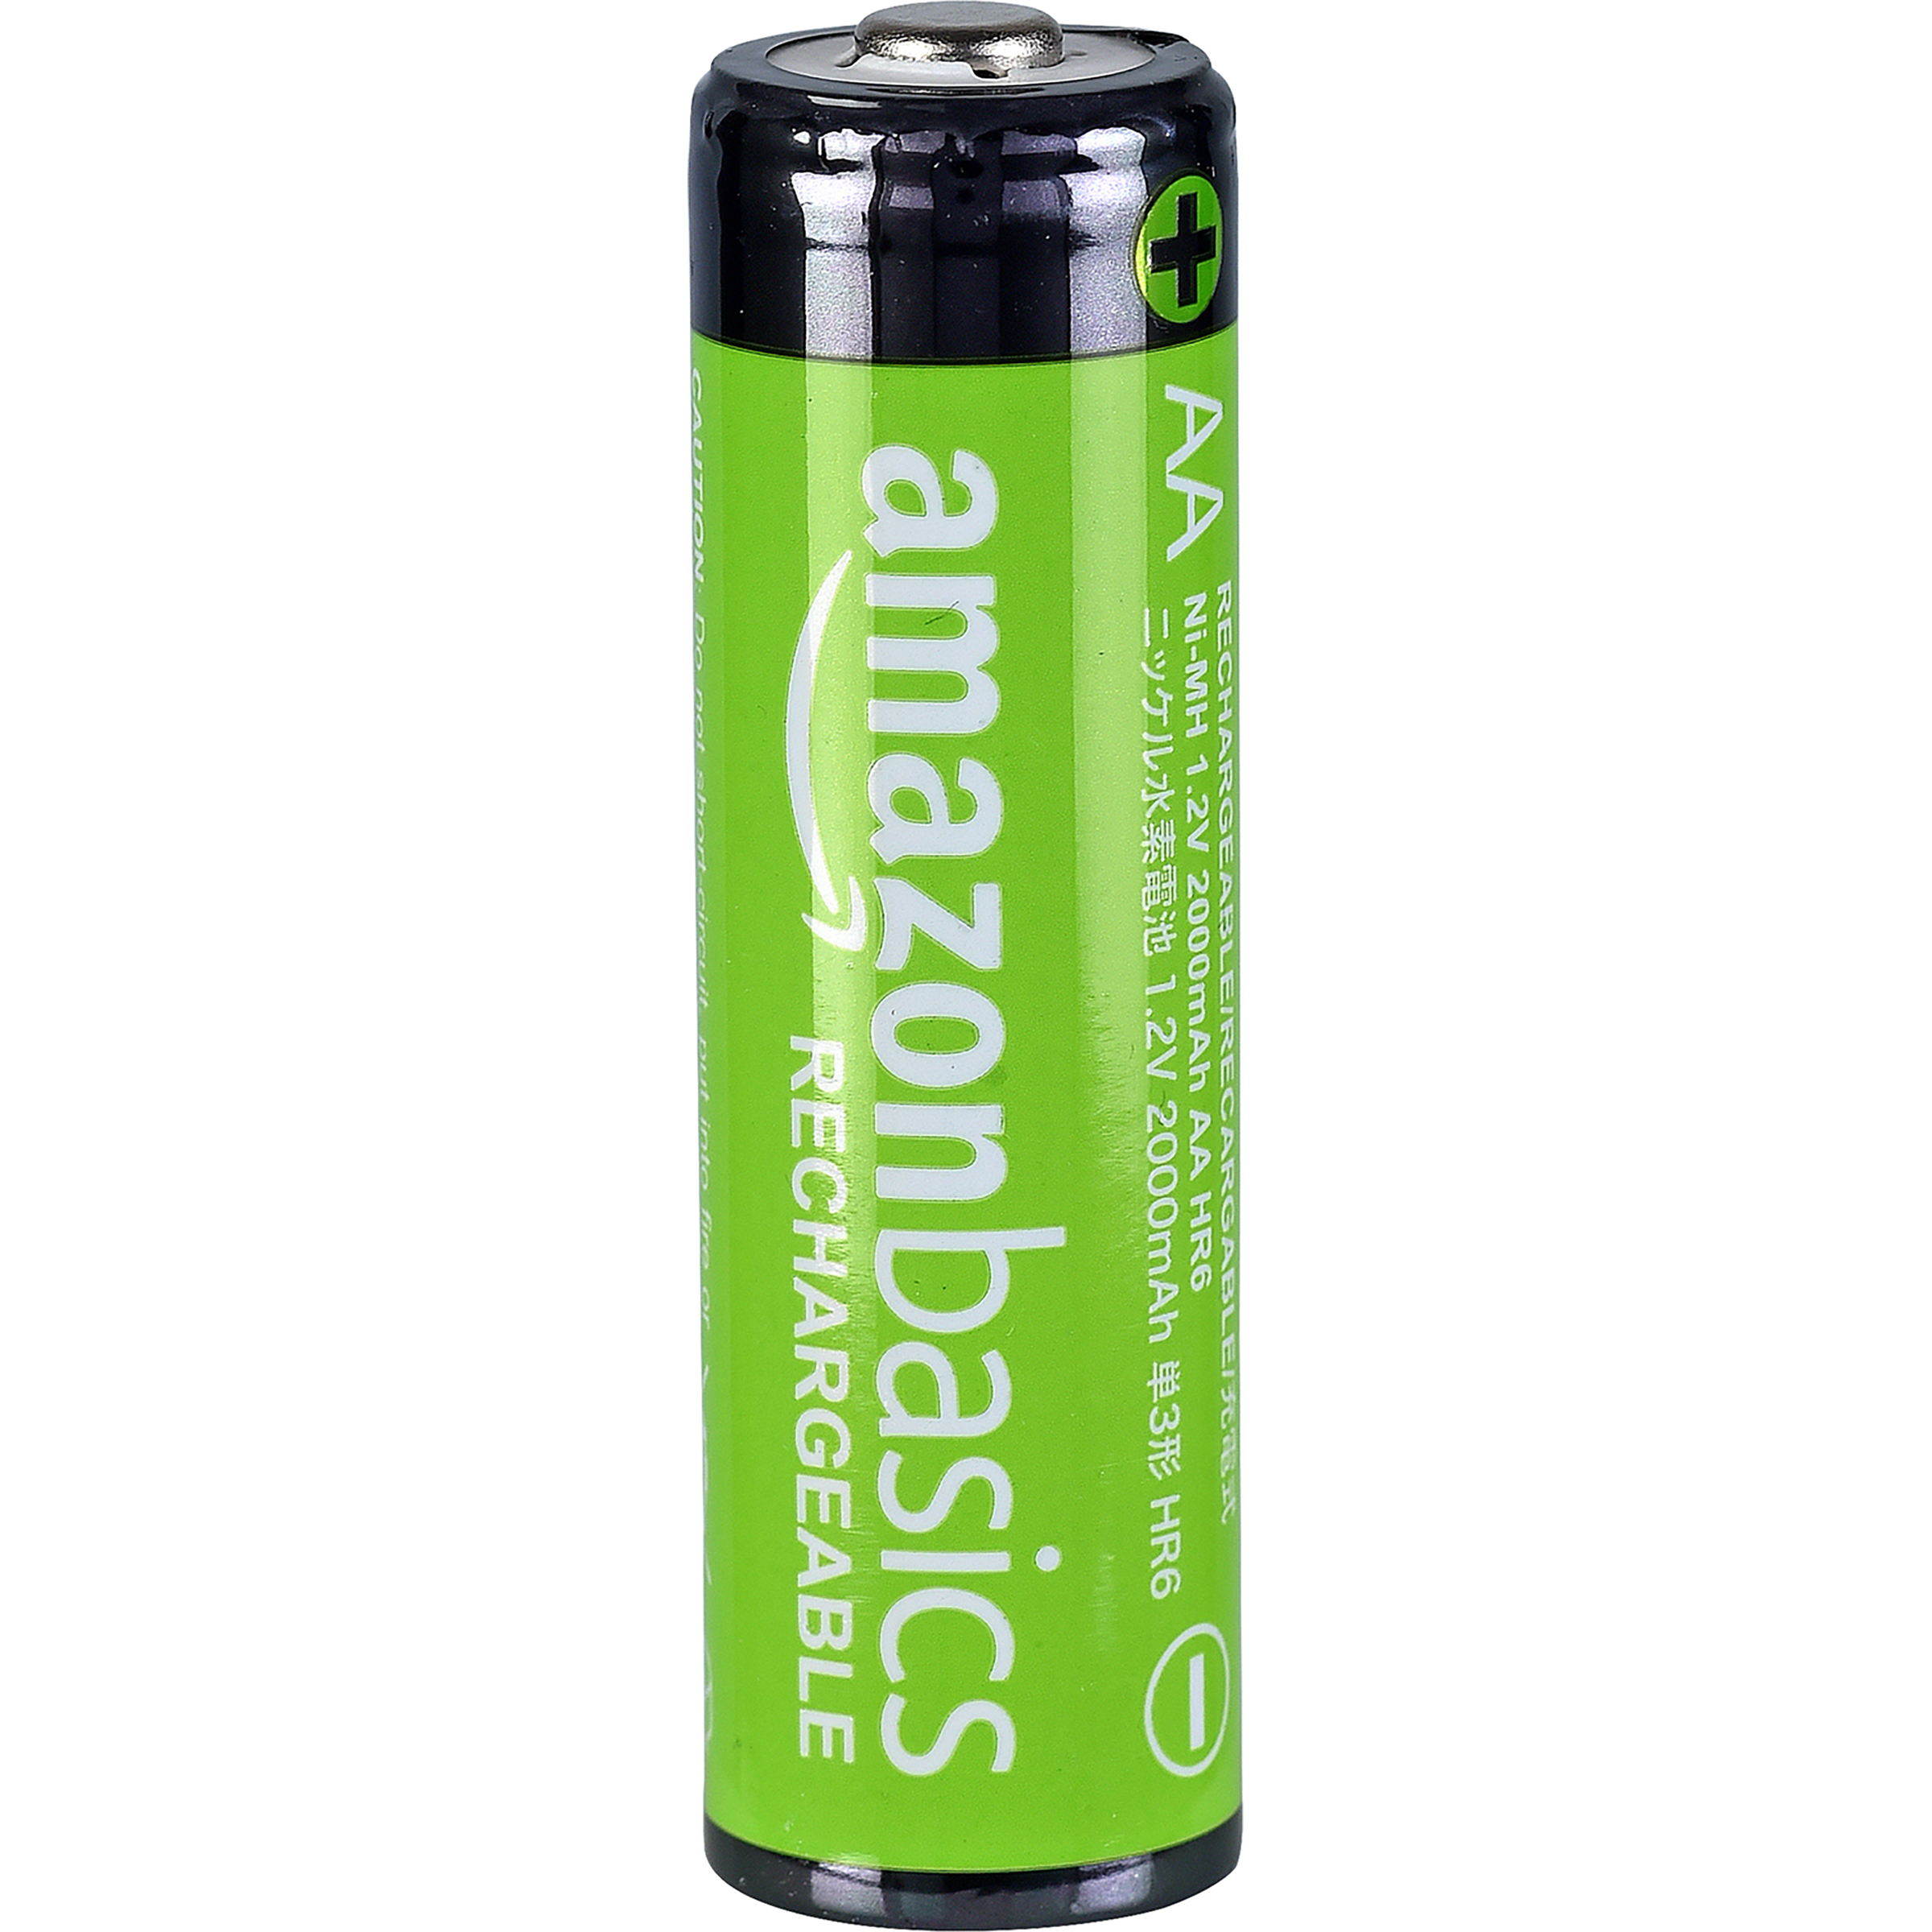 Amazon Basics AA Rechargeable Batteries -  